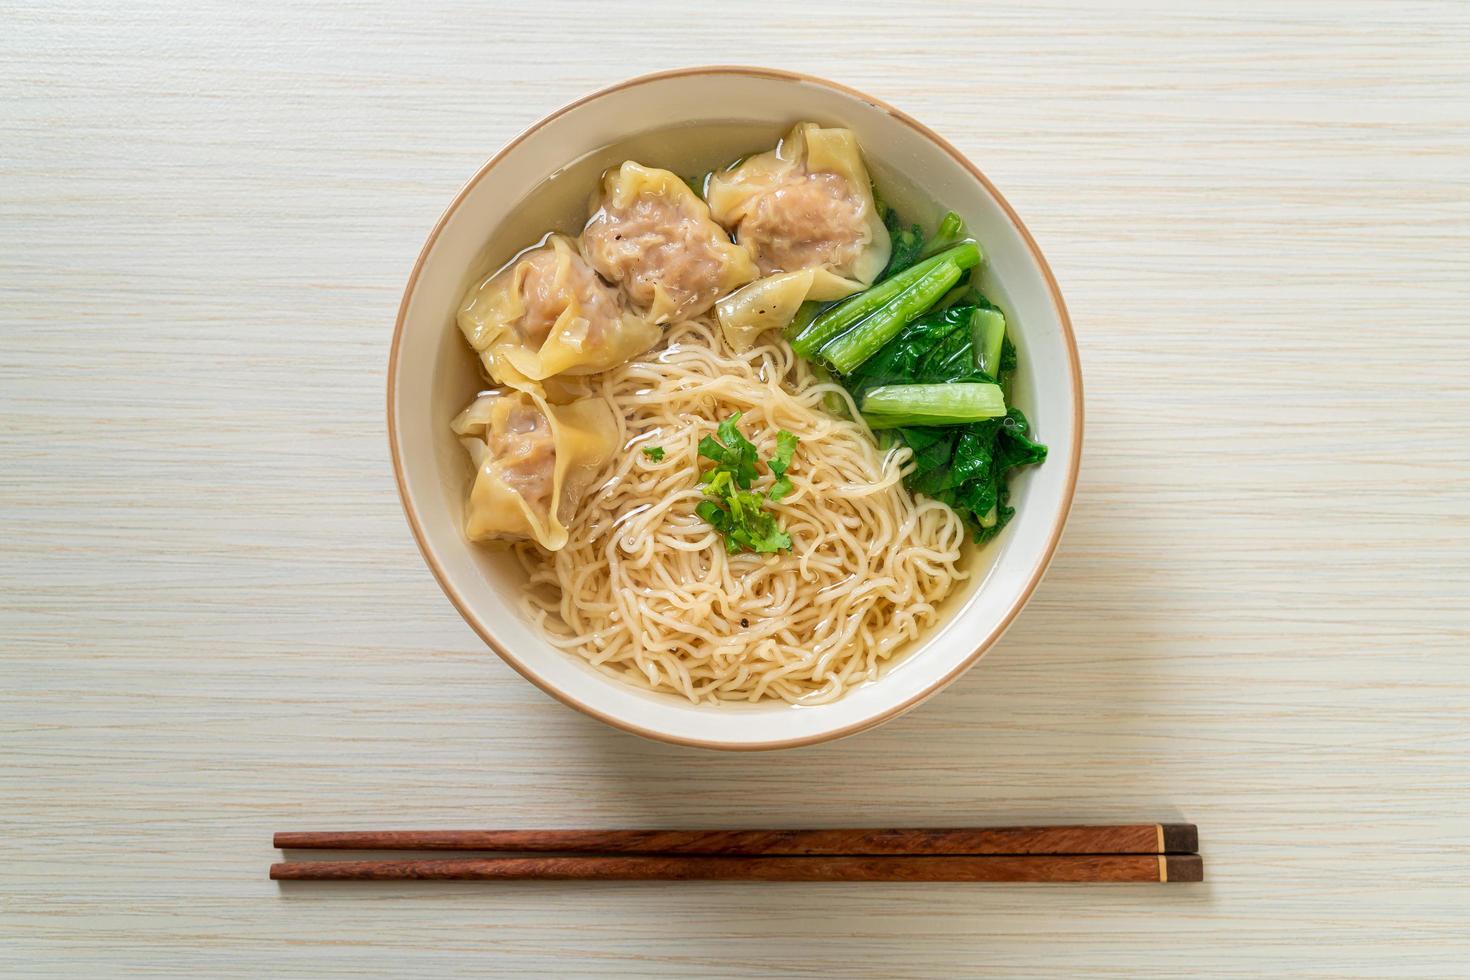 nouilles aux œufs avec soupe wonton au porc ou soupe de boulettes de porc et légumes - style cuisine asiatique photo